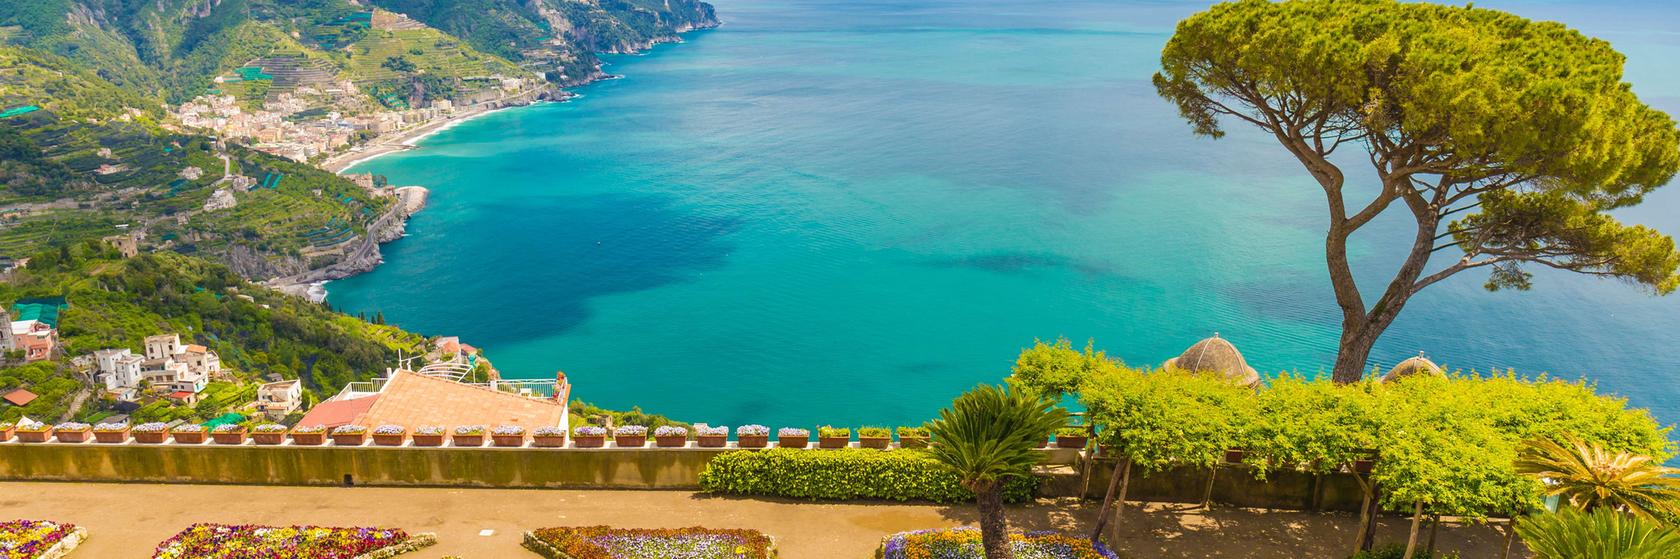 Dovolená pobřeží Amalfi - Neapolský záliv